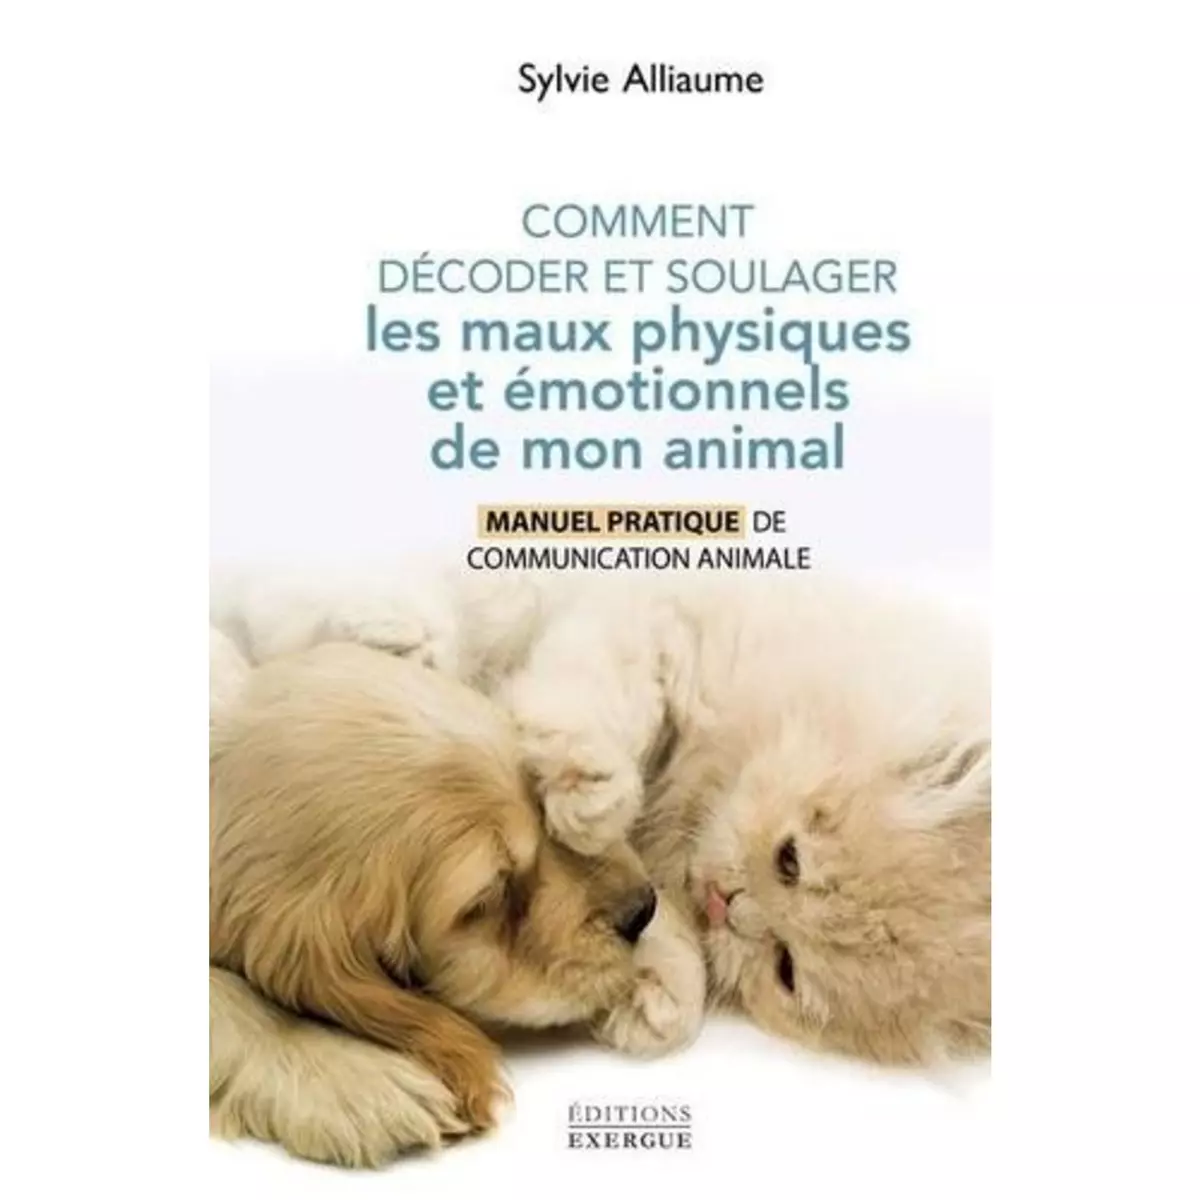  COMMENT DECODER ET SOULAGER LES MAUX PHYSIQUES ET EMOTIONNELS DE MON ANIMAL. MANUEL PRATIQUE DE COMMUNICATION ANIMALE, Alliaume Sylvie